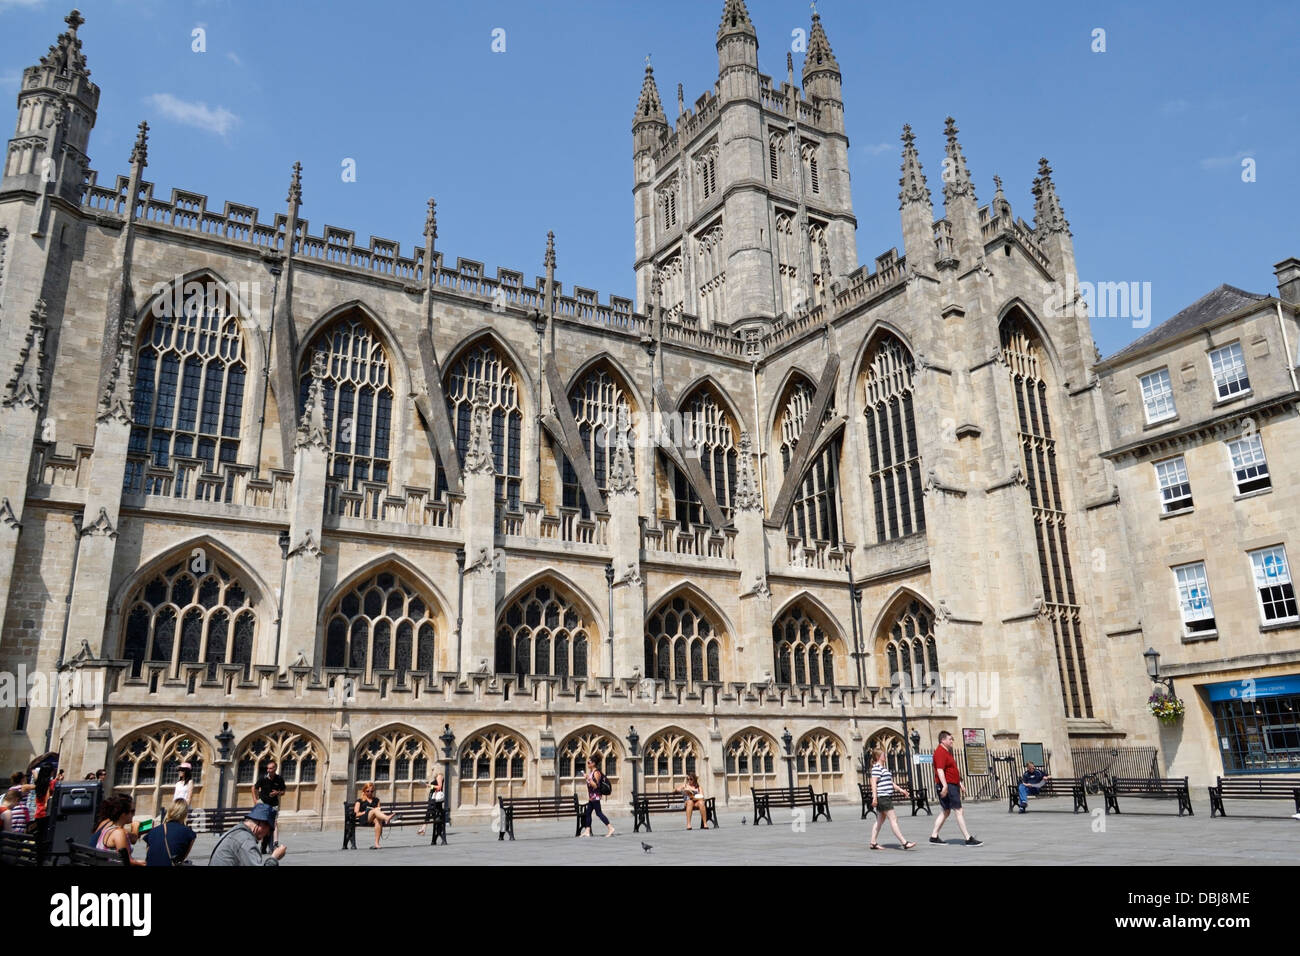 Piazza dell'Abbazia di Bath. Inglese centro città chiesa. Inghilterra Regno Unito. Patrimonio mondiale architettura destinazione turistica Foto Stock